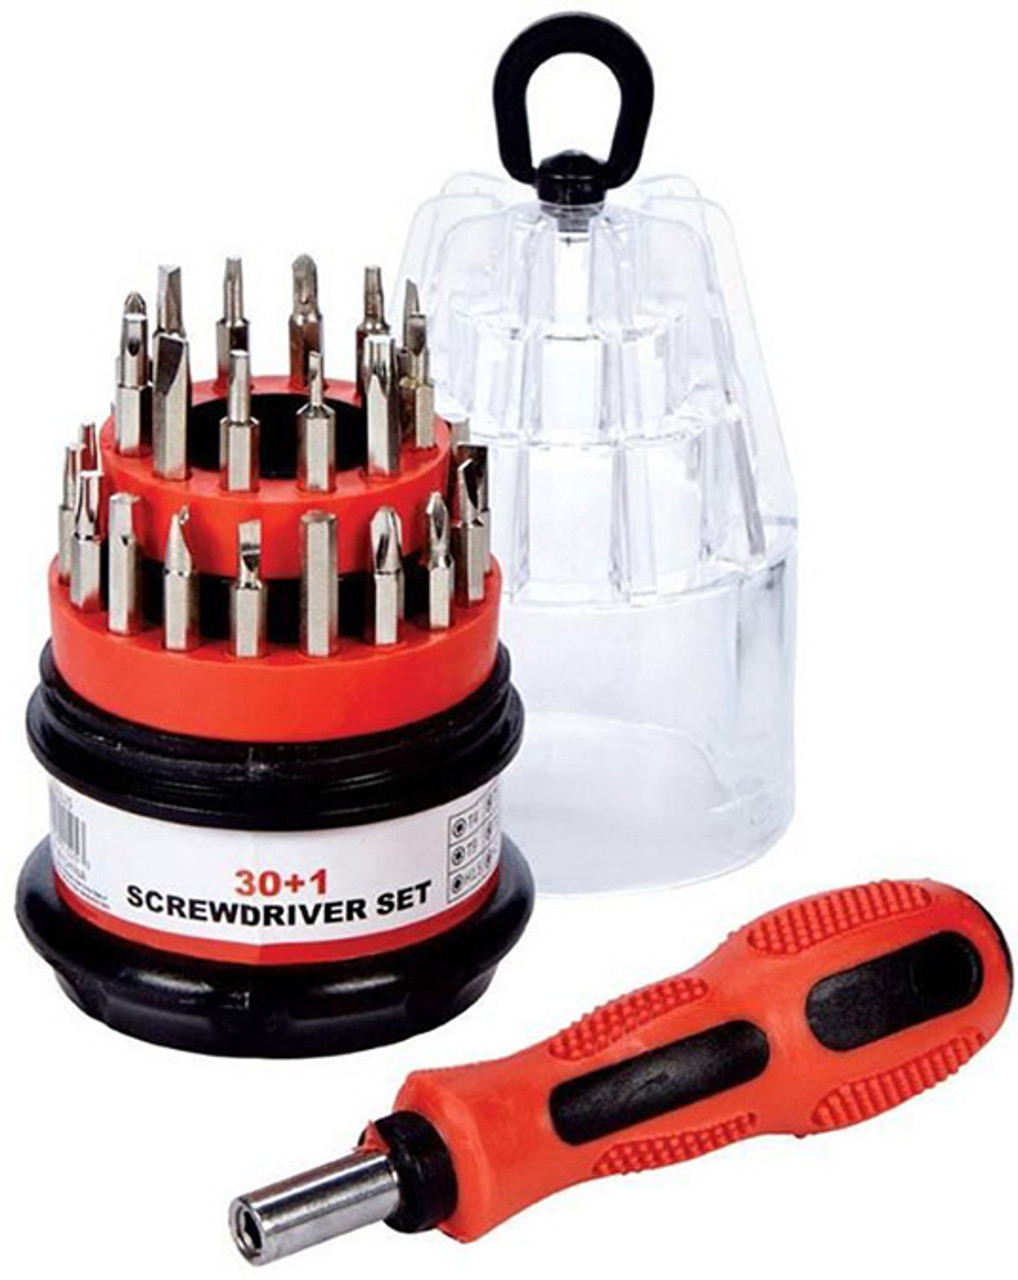 Max Force Tools Compact 30+1 Mini Screwdriver Set 2221525